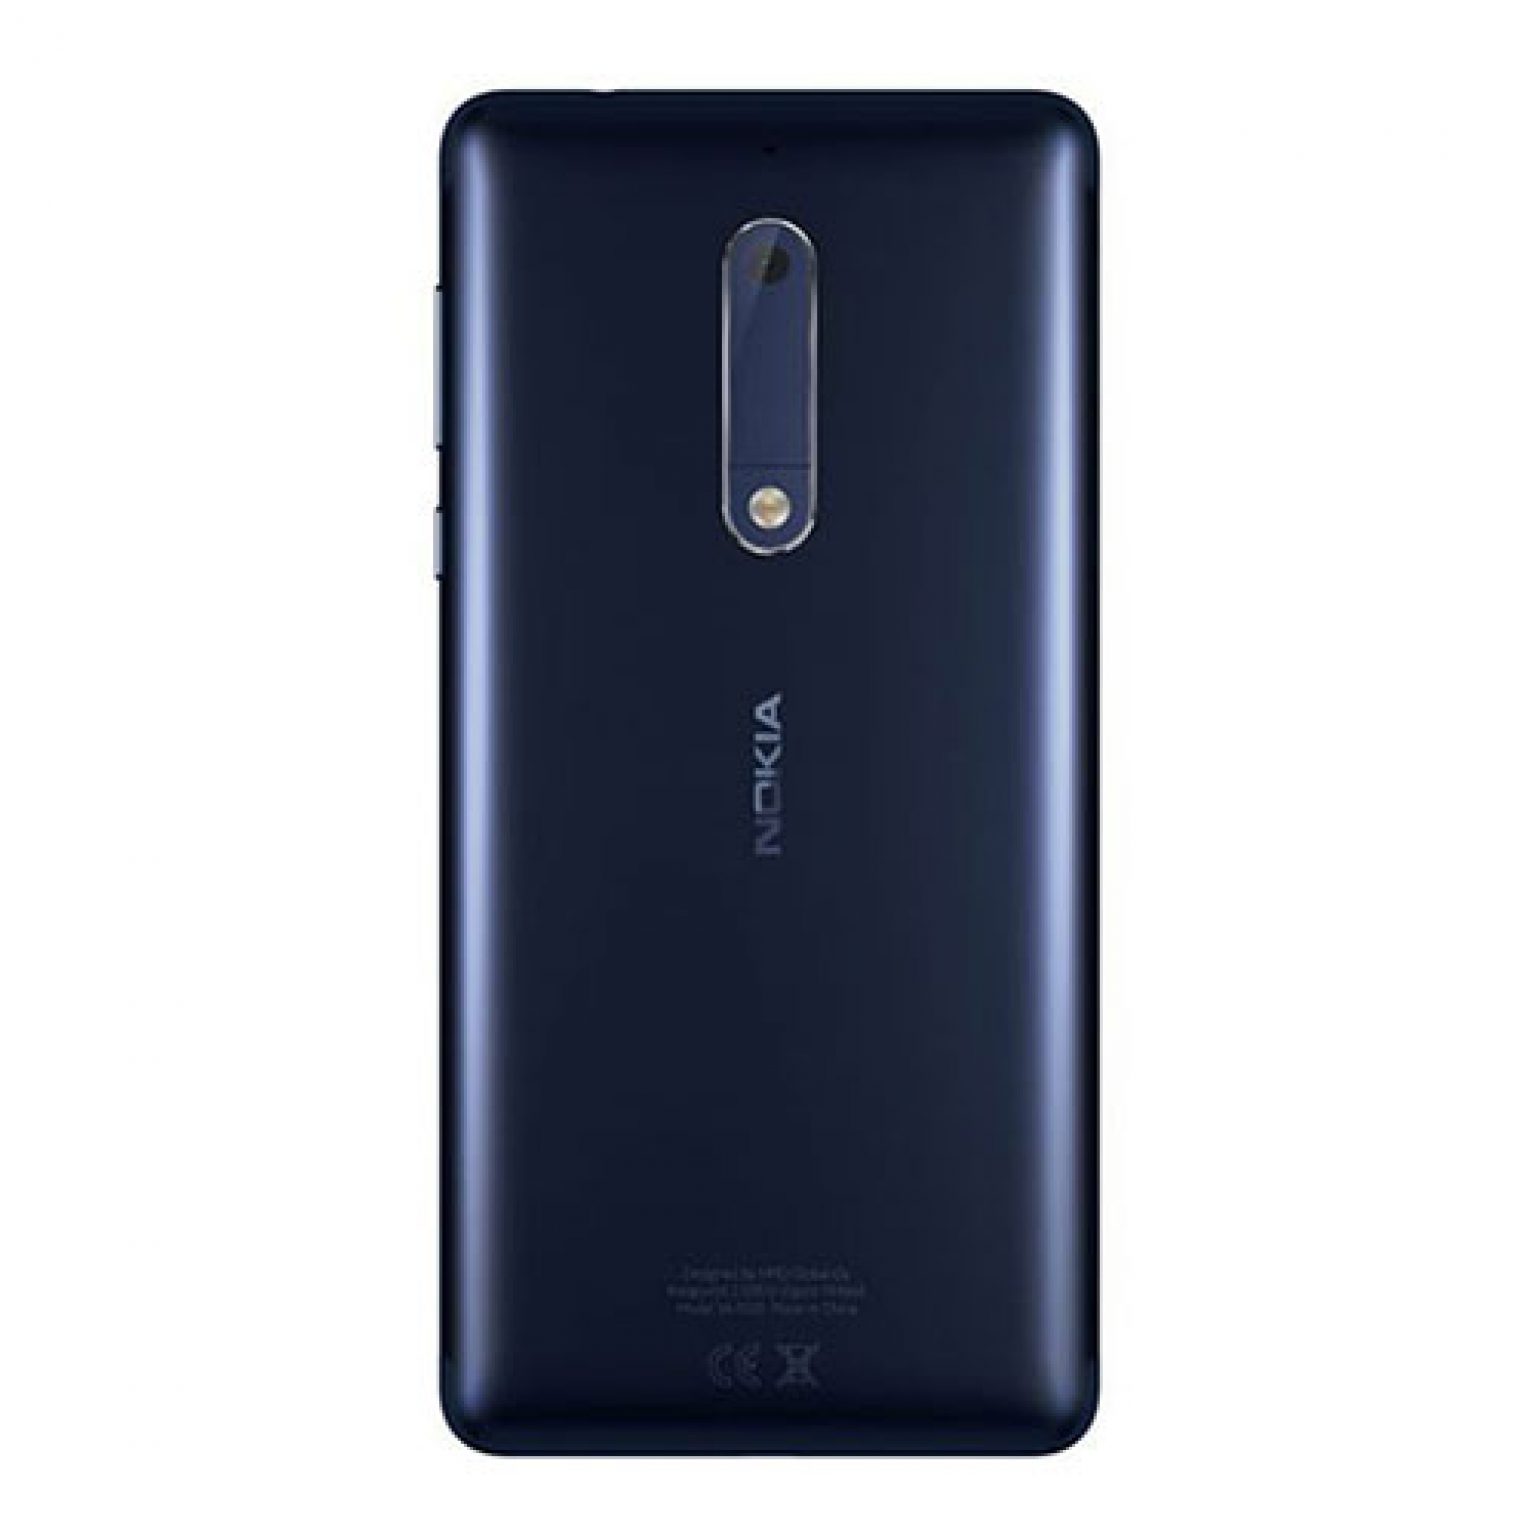 Nokia 5 3